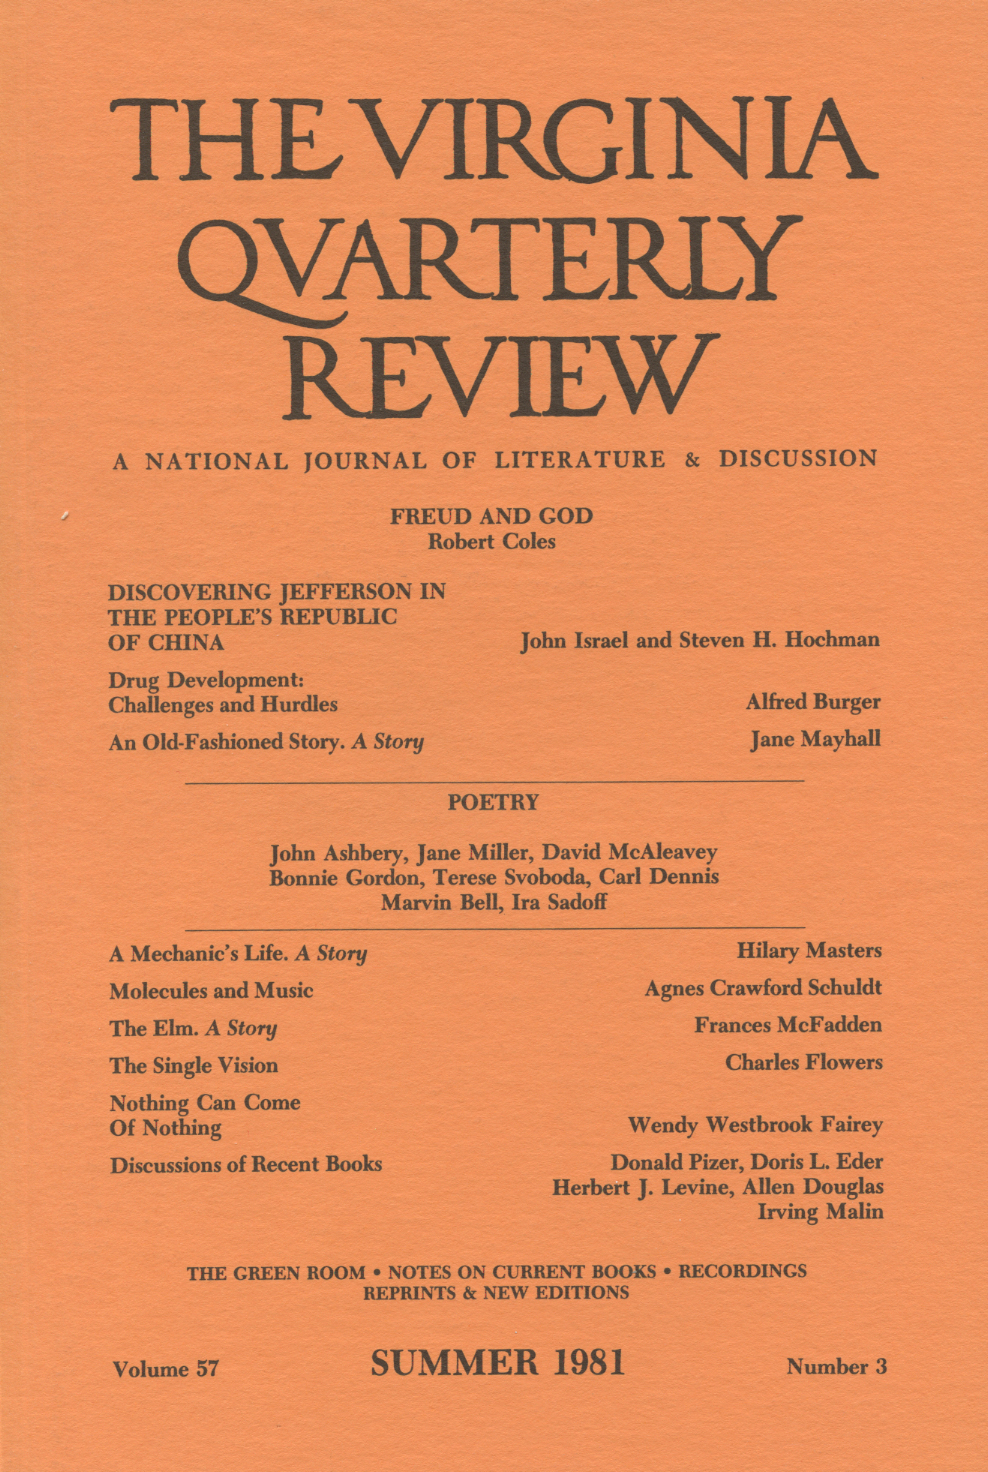 Virginia Quarterly Review, Summer 1981 cover